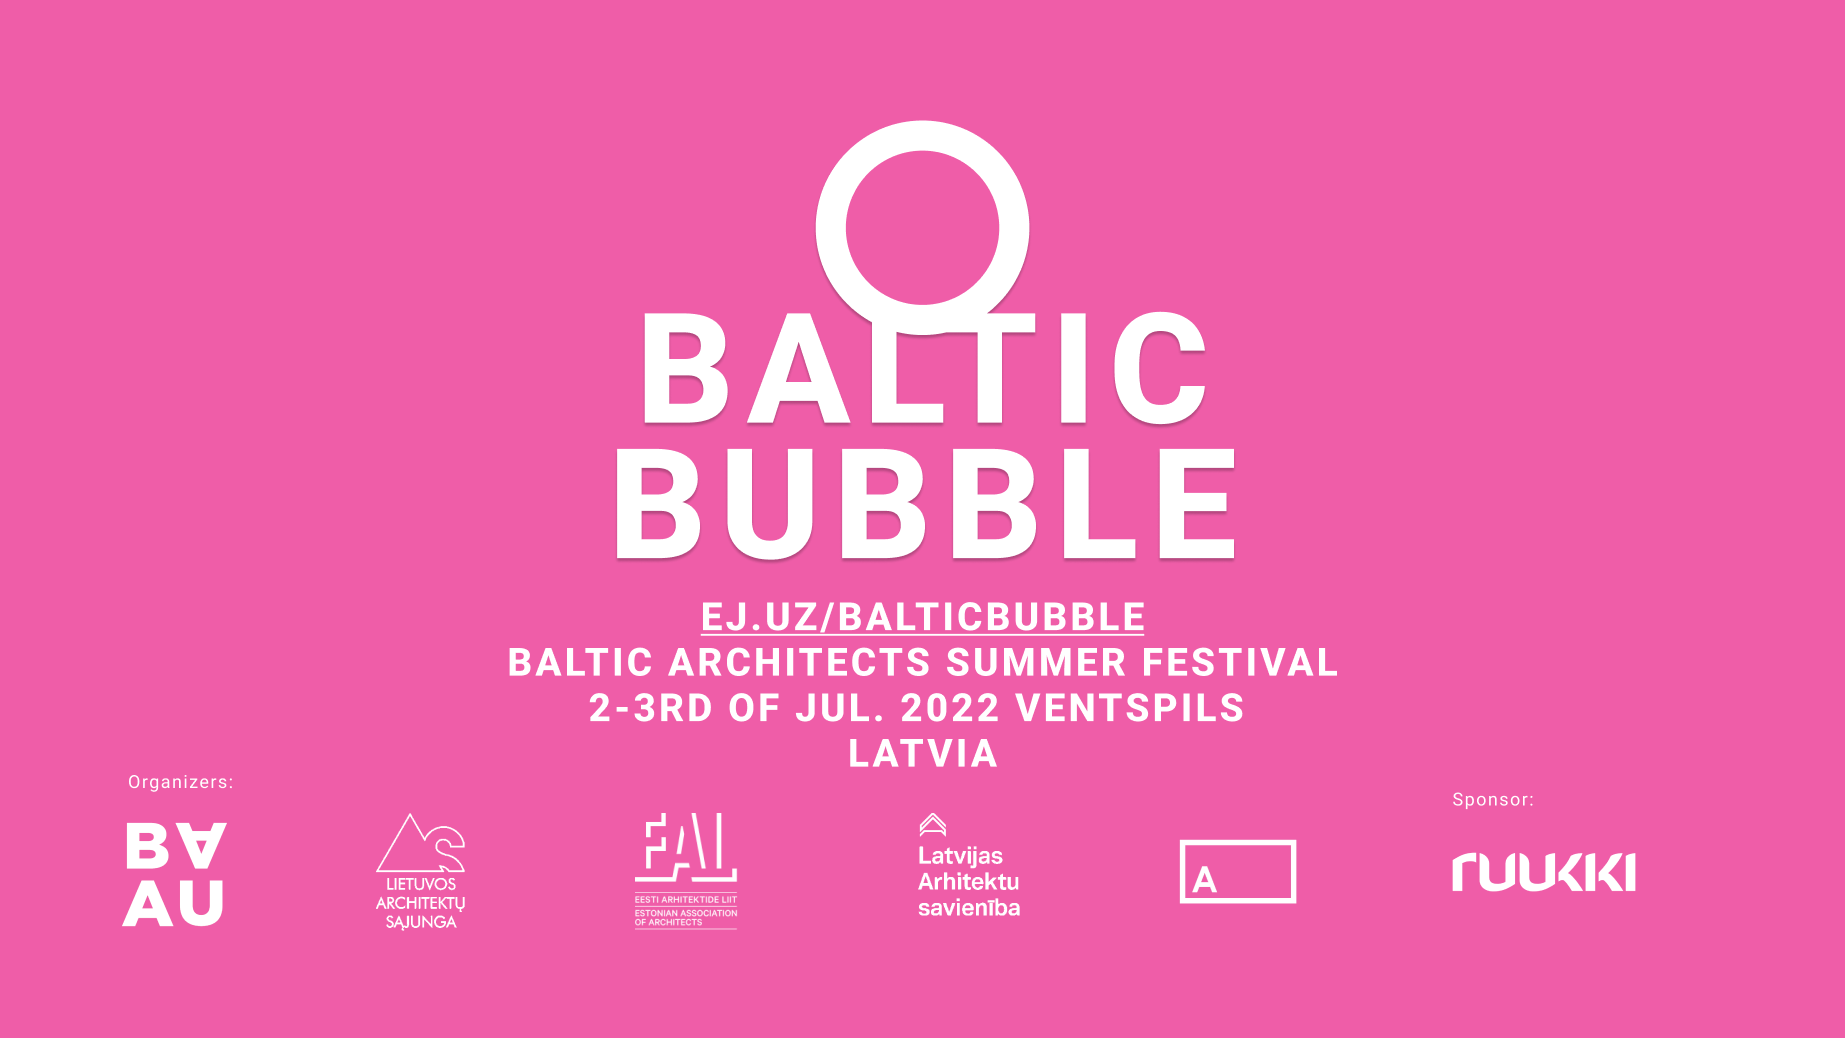 Architektų dienos proga – Baltic Bubble Ventspilyje!